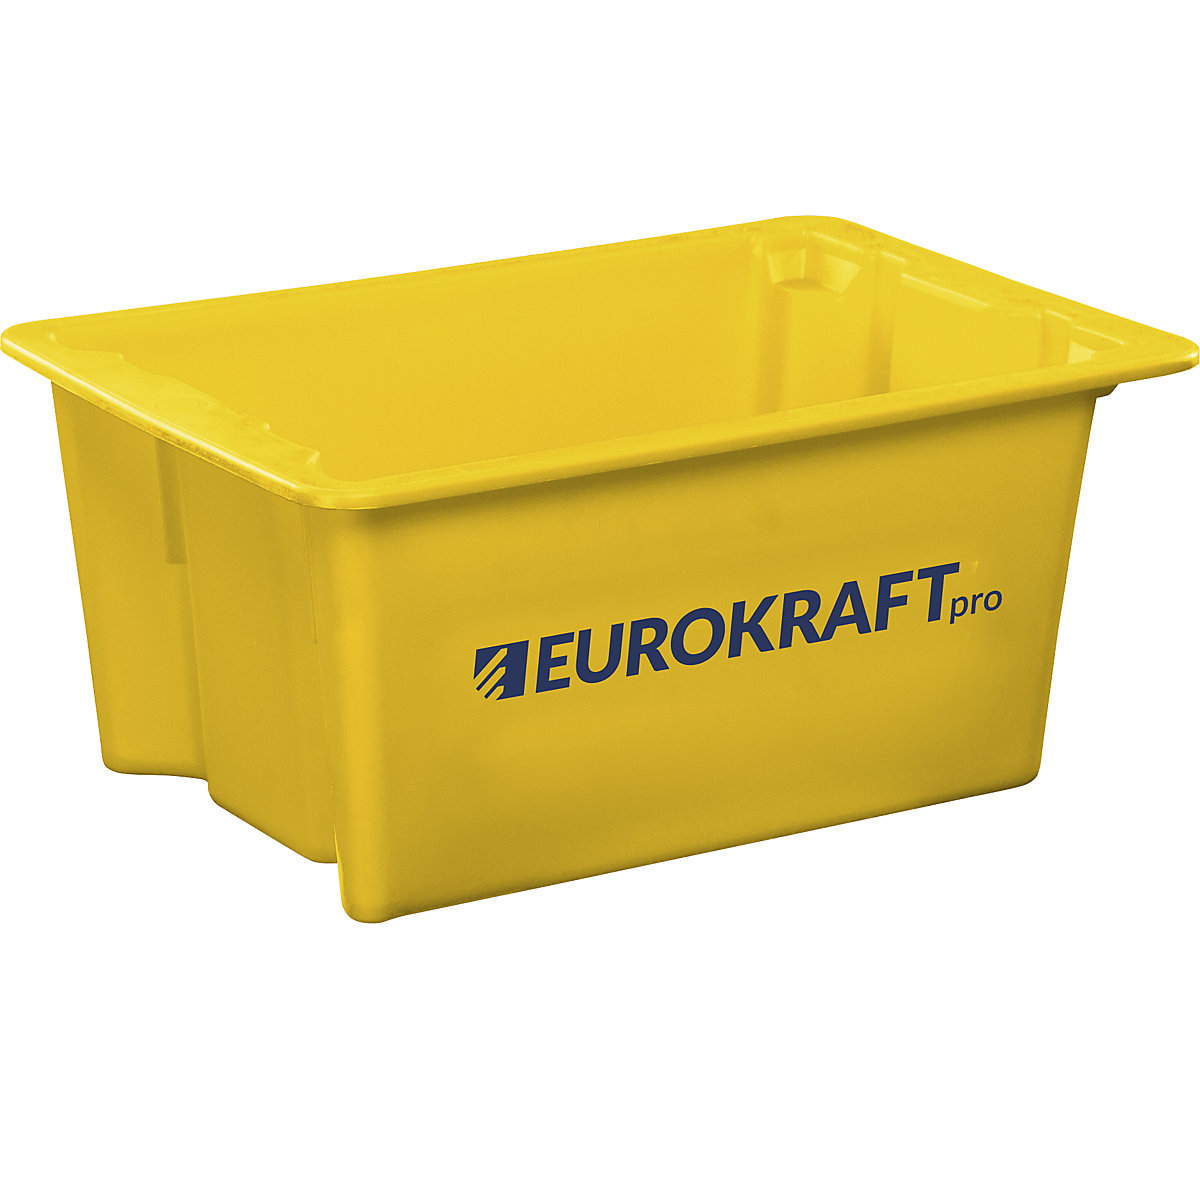 EUROKRAFTpro Drehstapelbehälter aus lebensmittelechtem Polypropylen, Inhalt 6 Liter, VE 4 Stk, Wände und Boden geschlossen, gelb